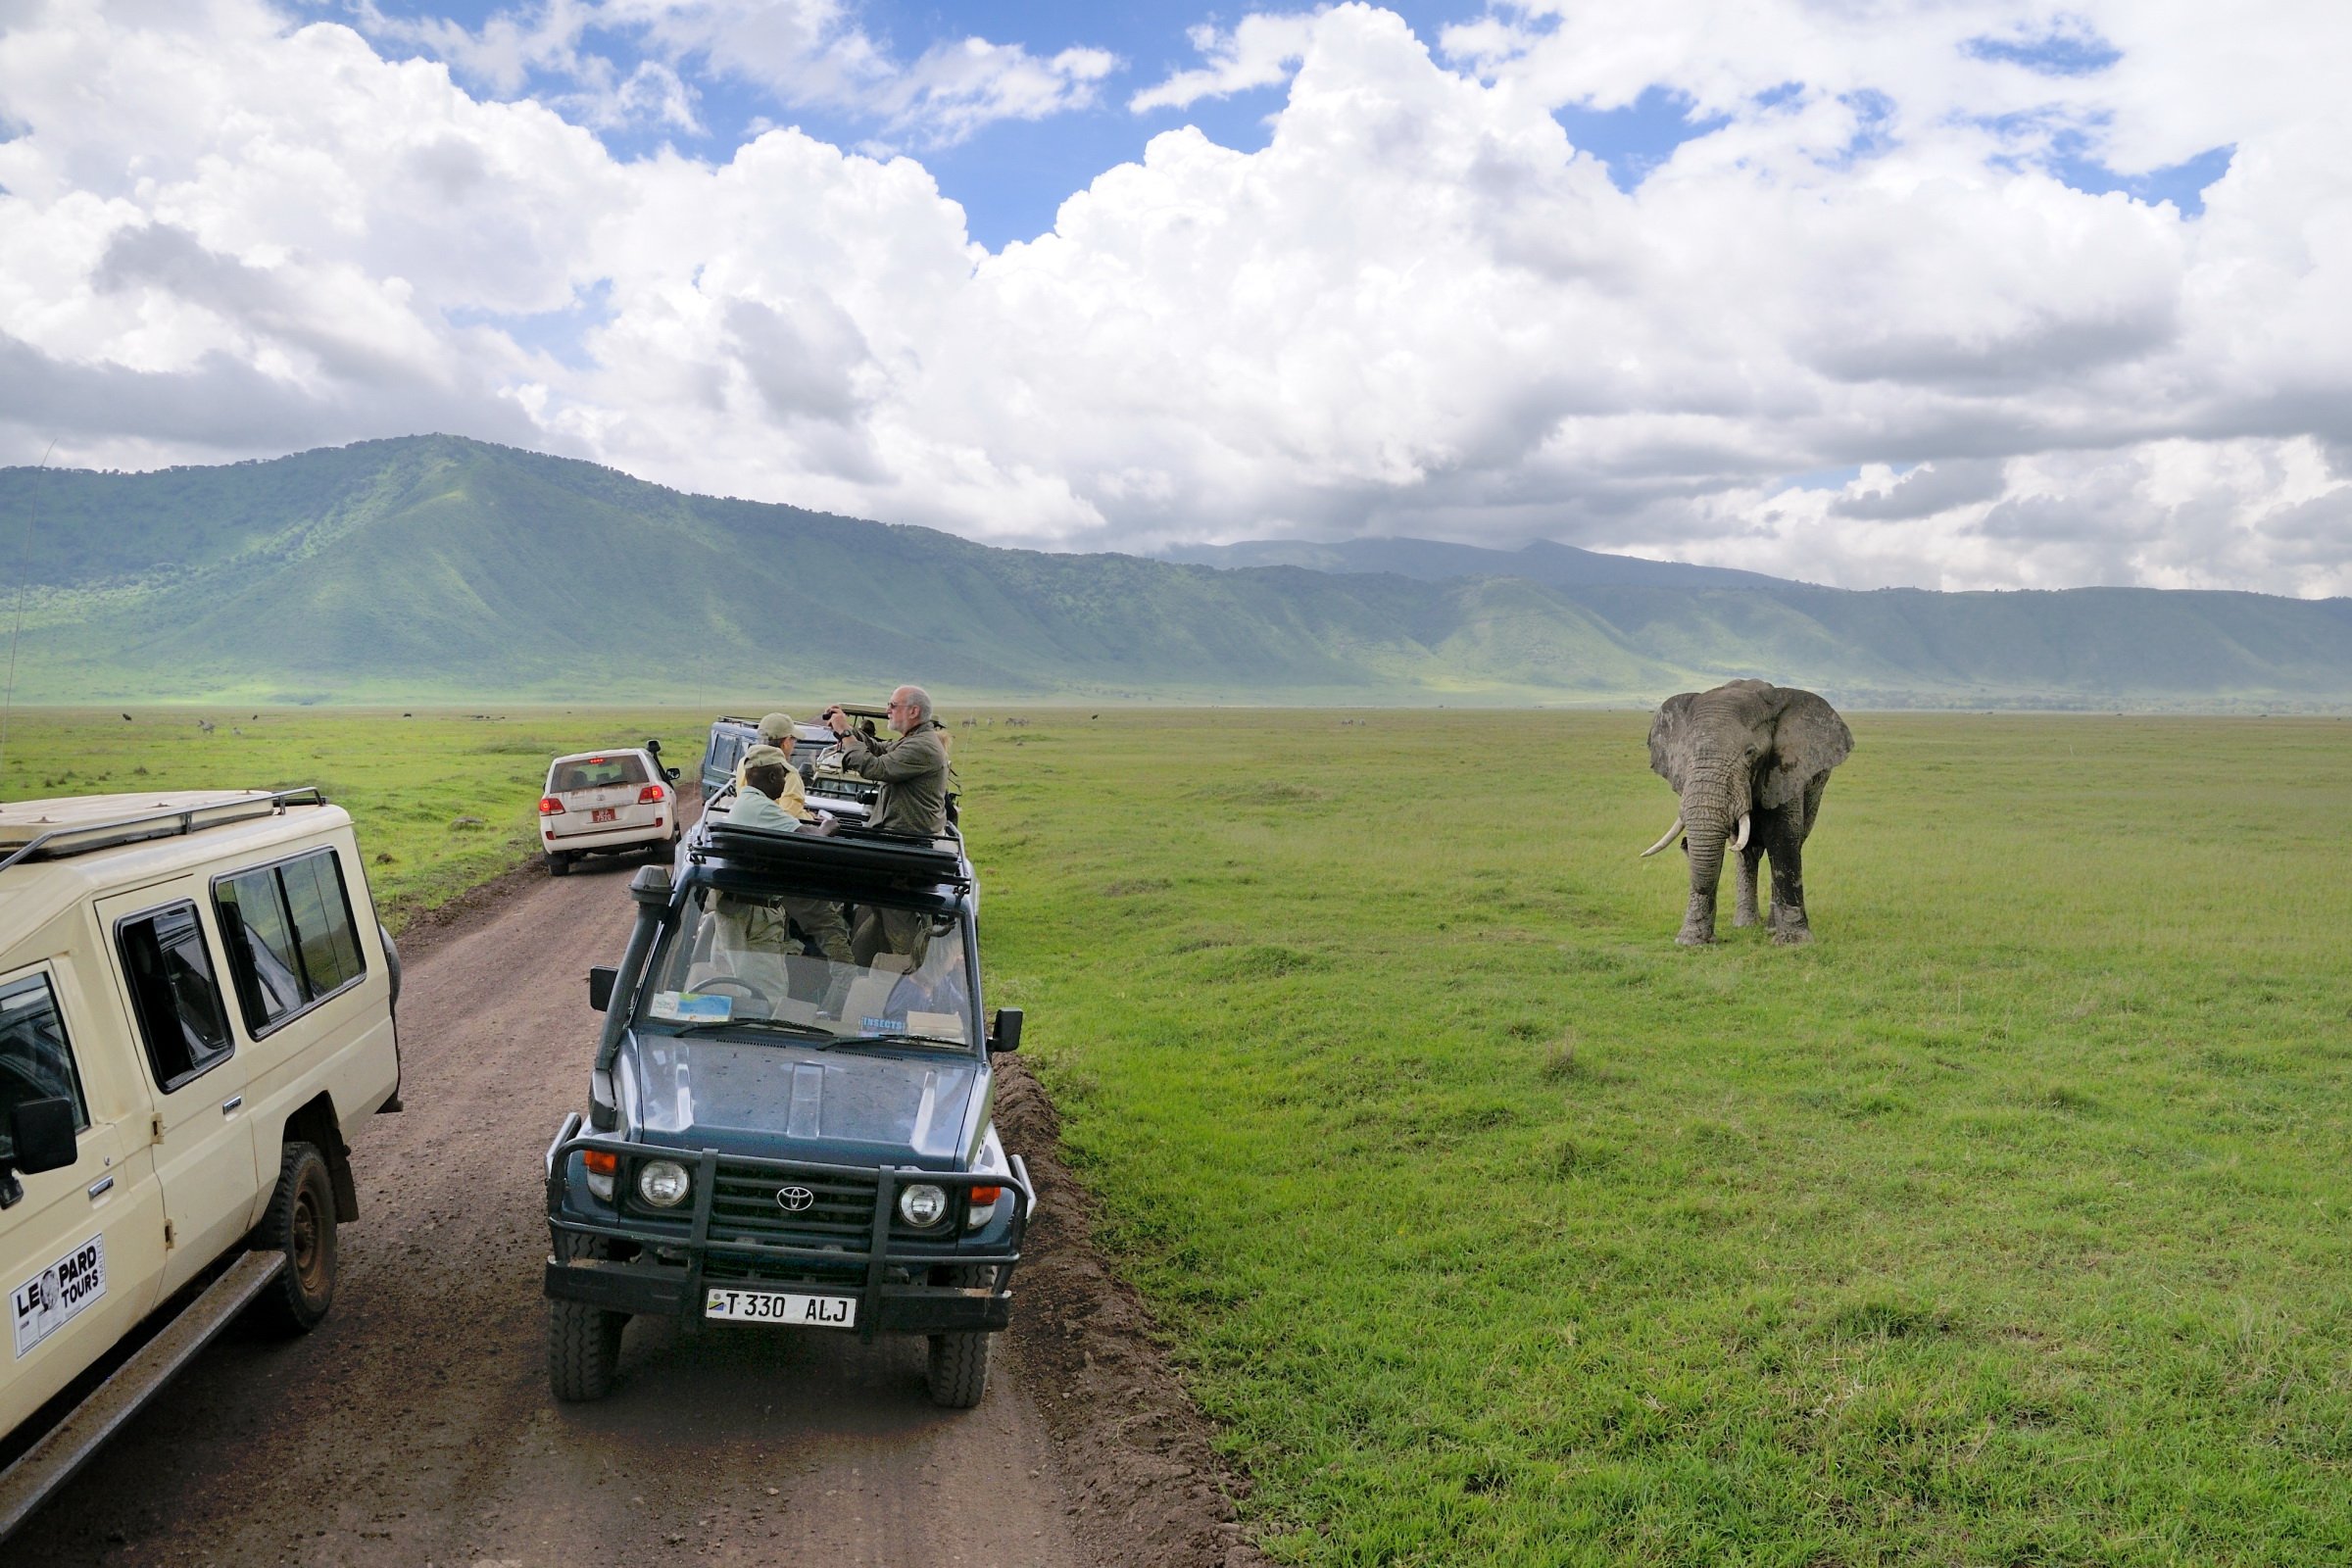 Elephant_and_tourists_at_Ngorongoro_Crater.jpg